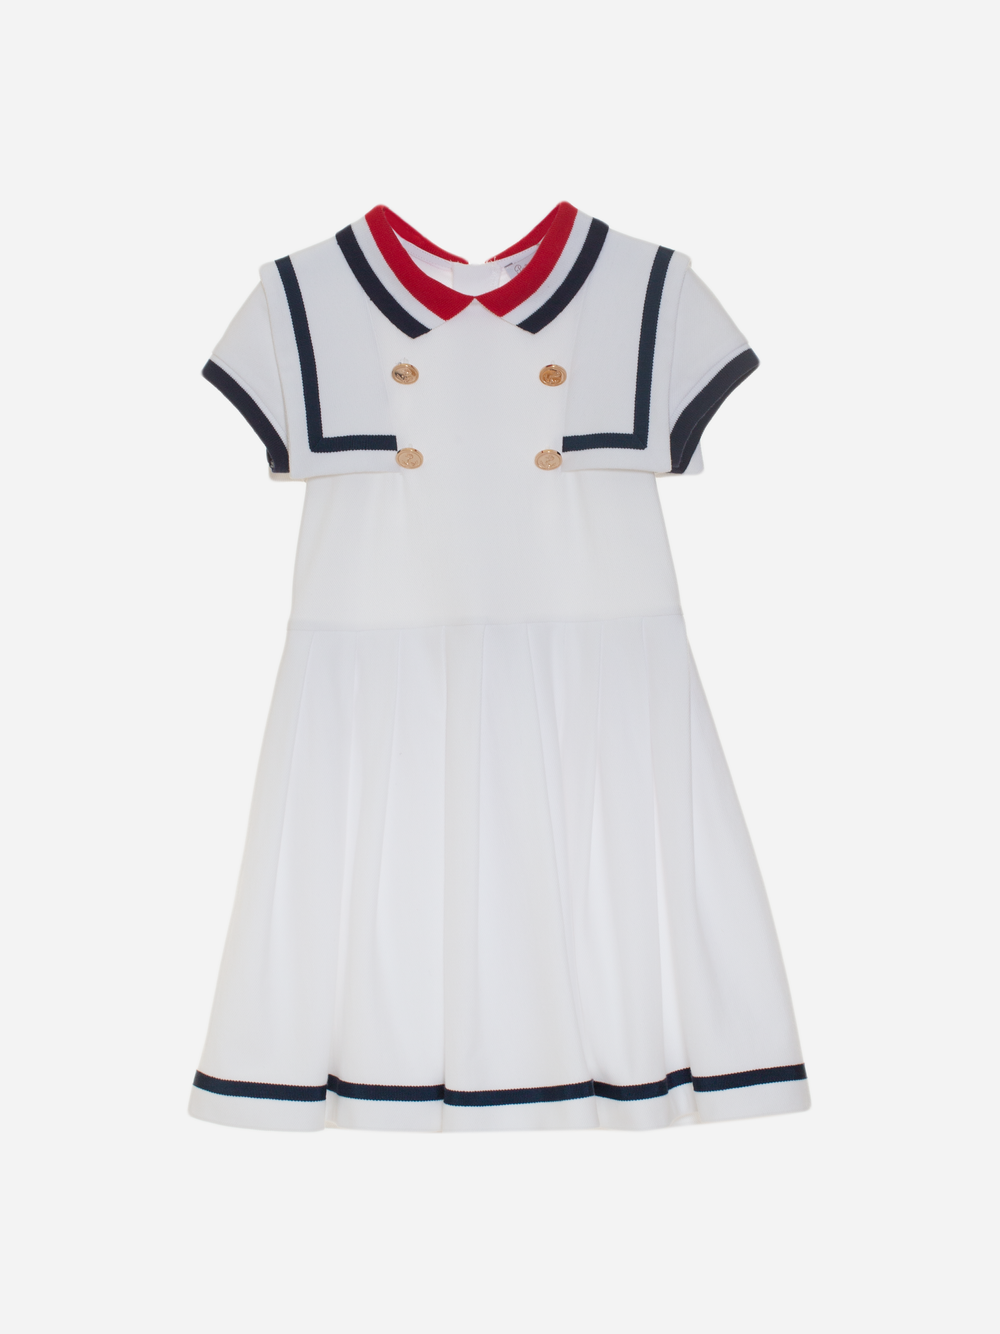 Vestido de menina marinheiro branco